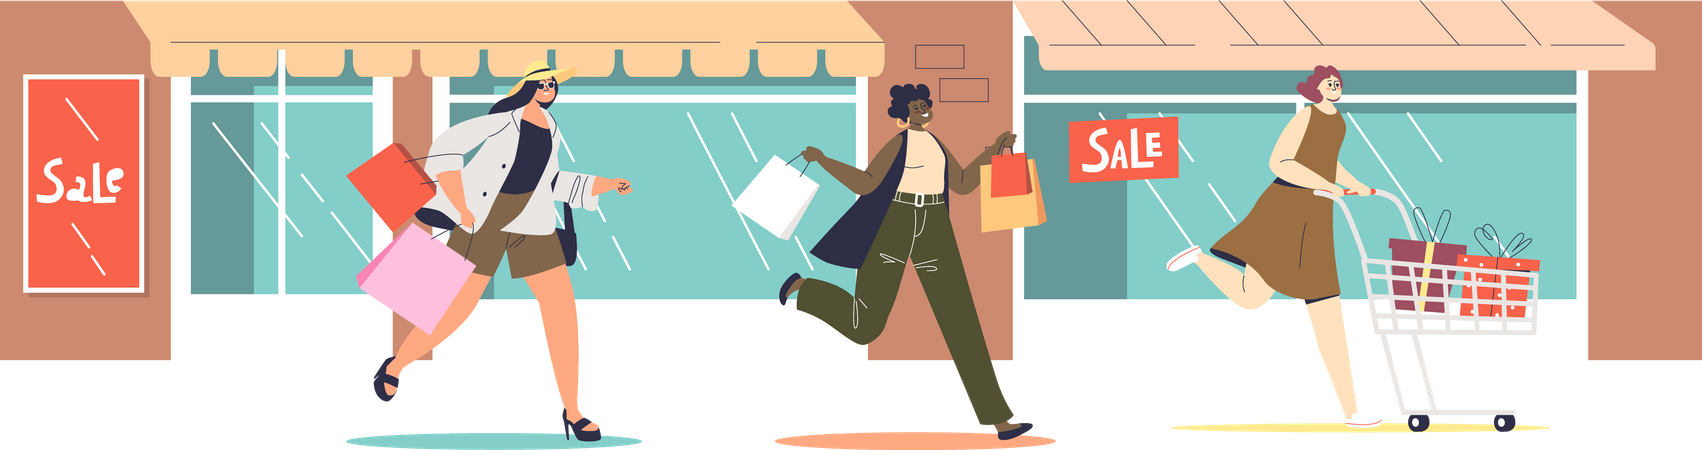 Women running for sales shopping Illustration